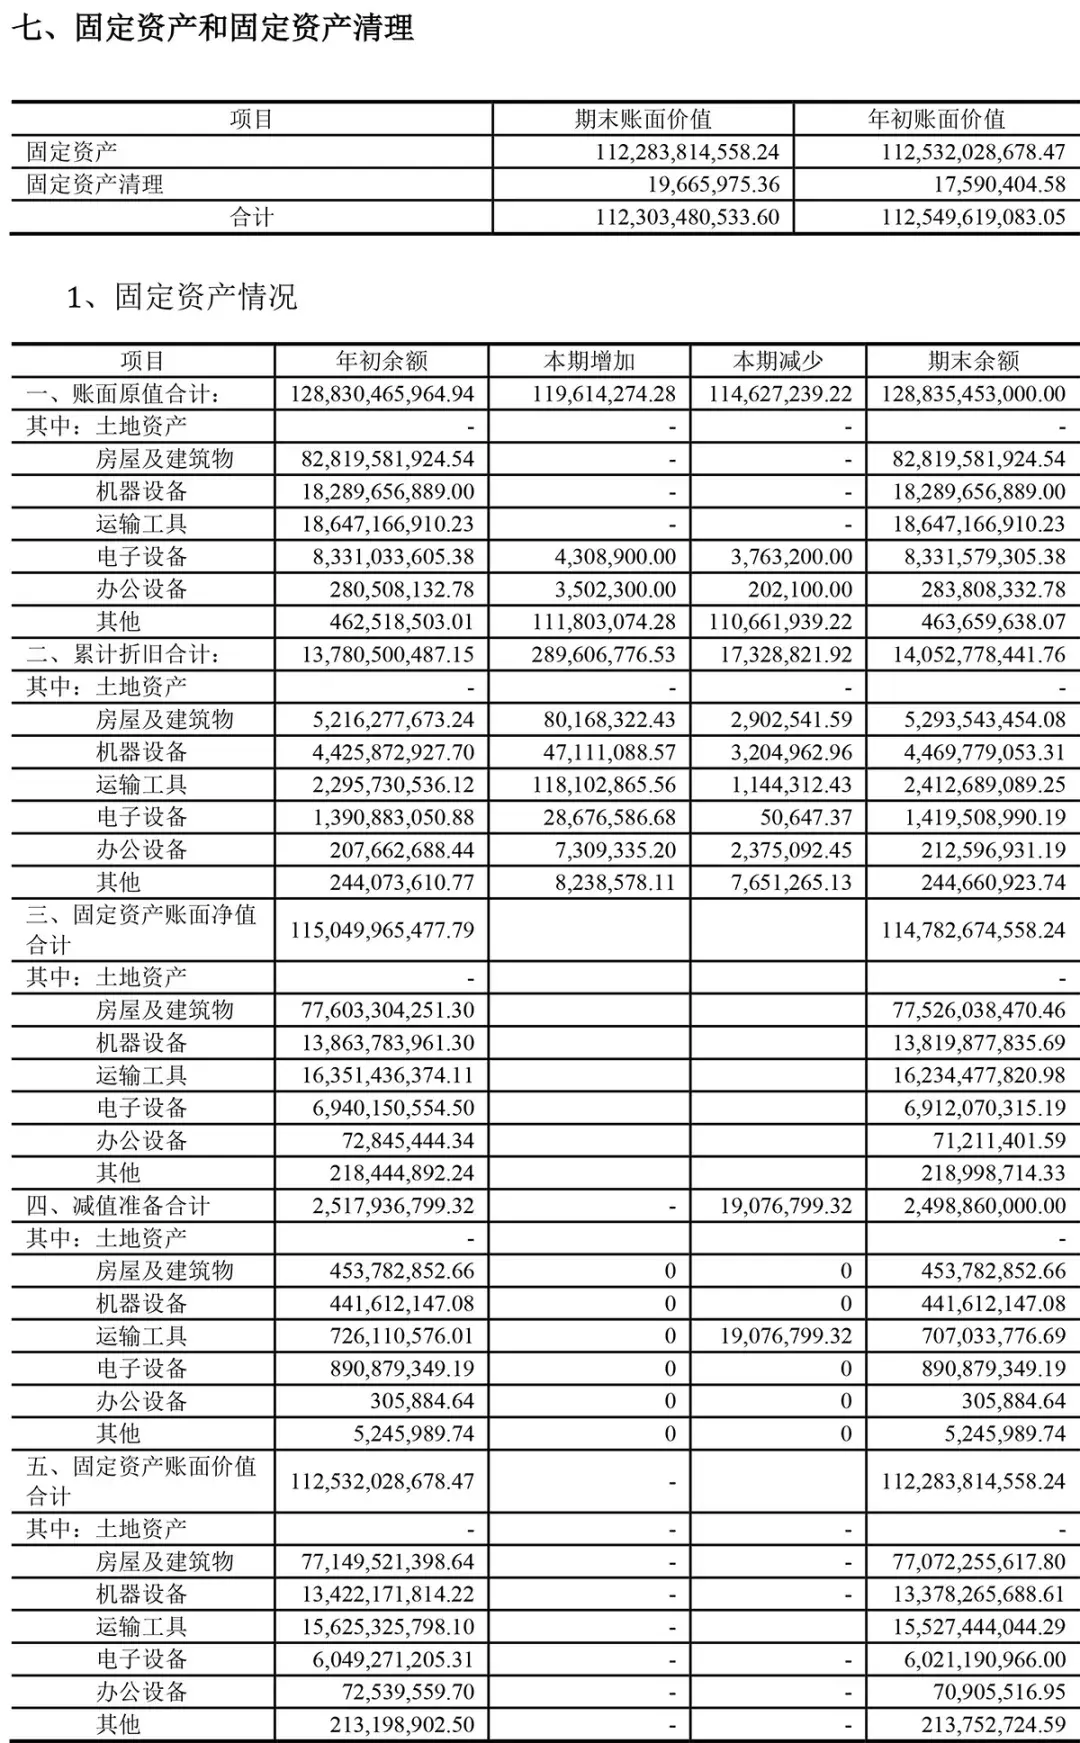 (广州地铁集团有限公司)广州地铁集团有限公司2020年半年度财务报表  第13张